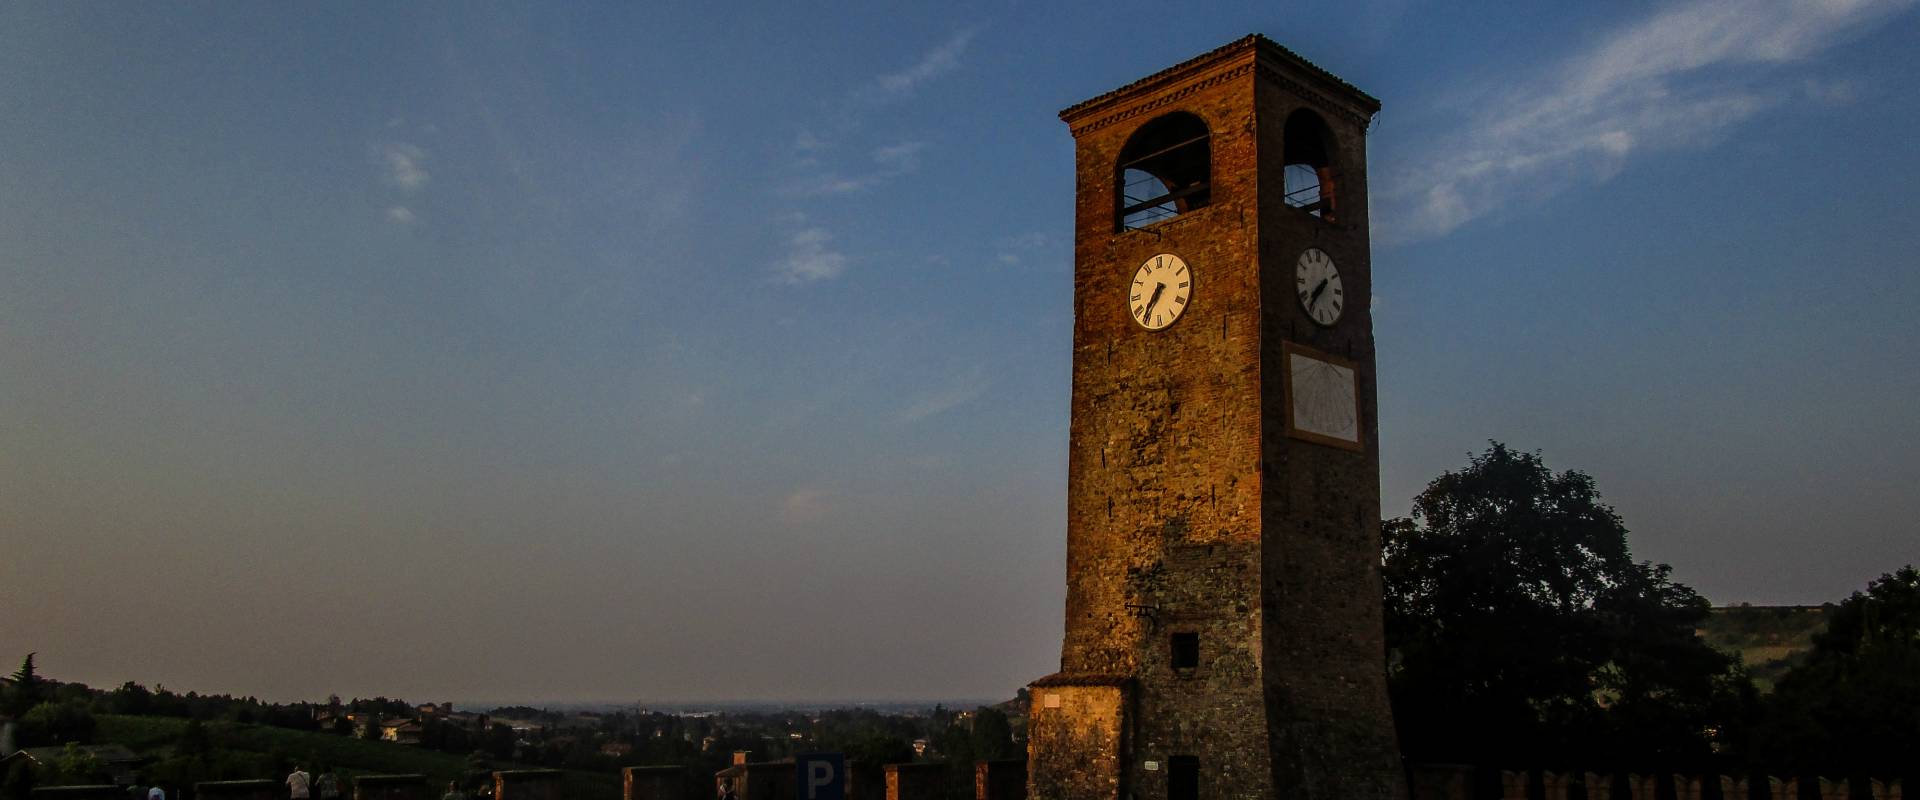 La Torre dell'Orologionel borgo foto di LucaNacchio